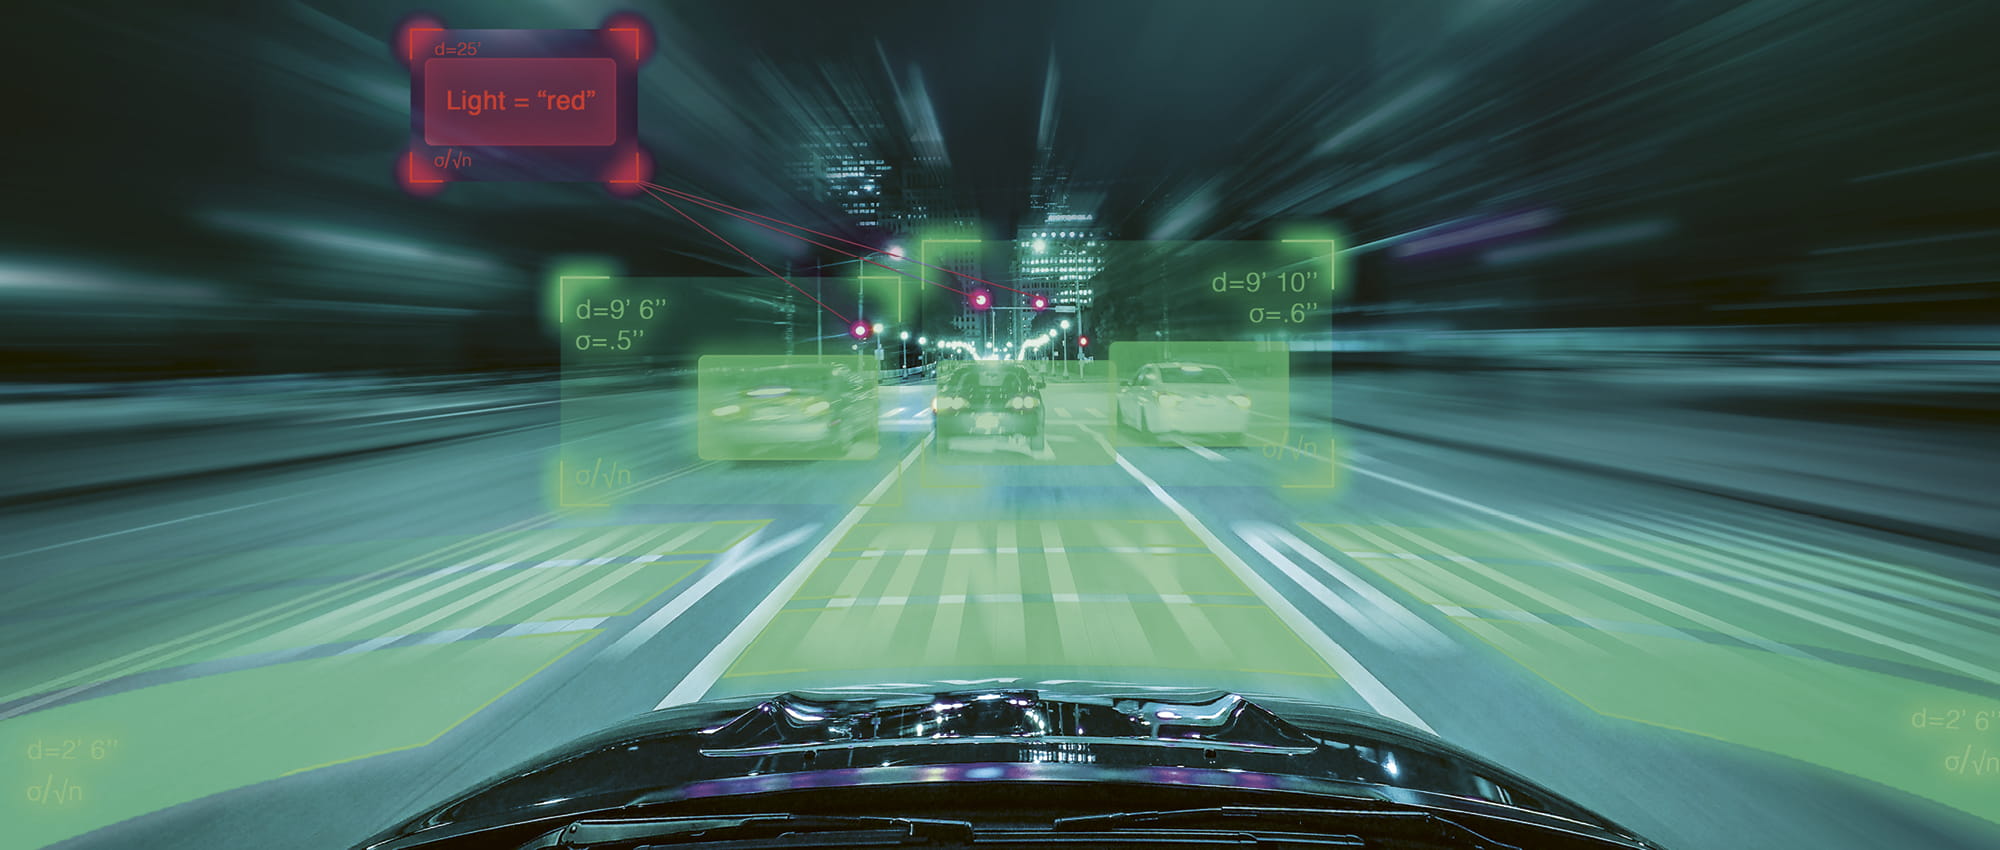 Grüne Windschutzscheibe eines Autos mit vorbeiziehender Skyline, auf der eine rote Ampel und die Geschwindigkeit der vorausfahrenden Autos in Kästchen angezeigt wird.